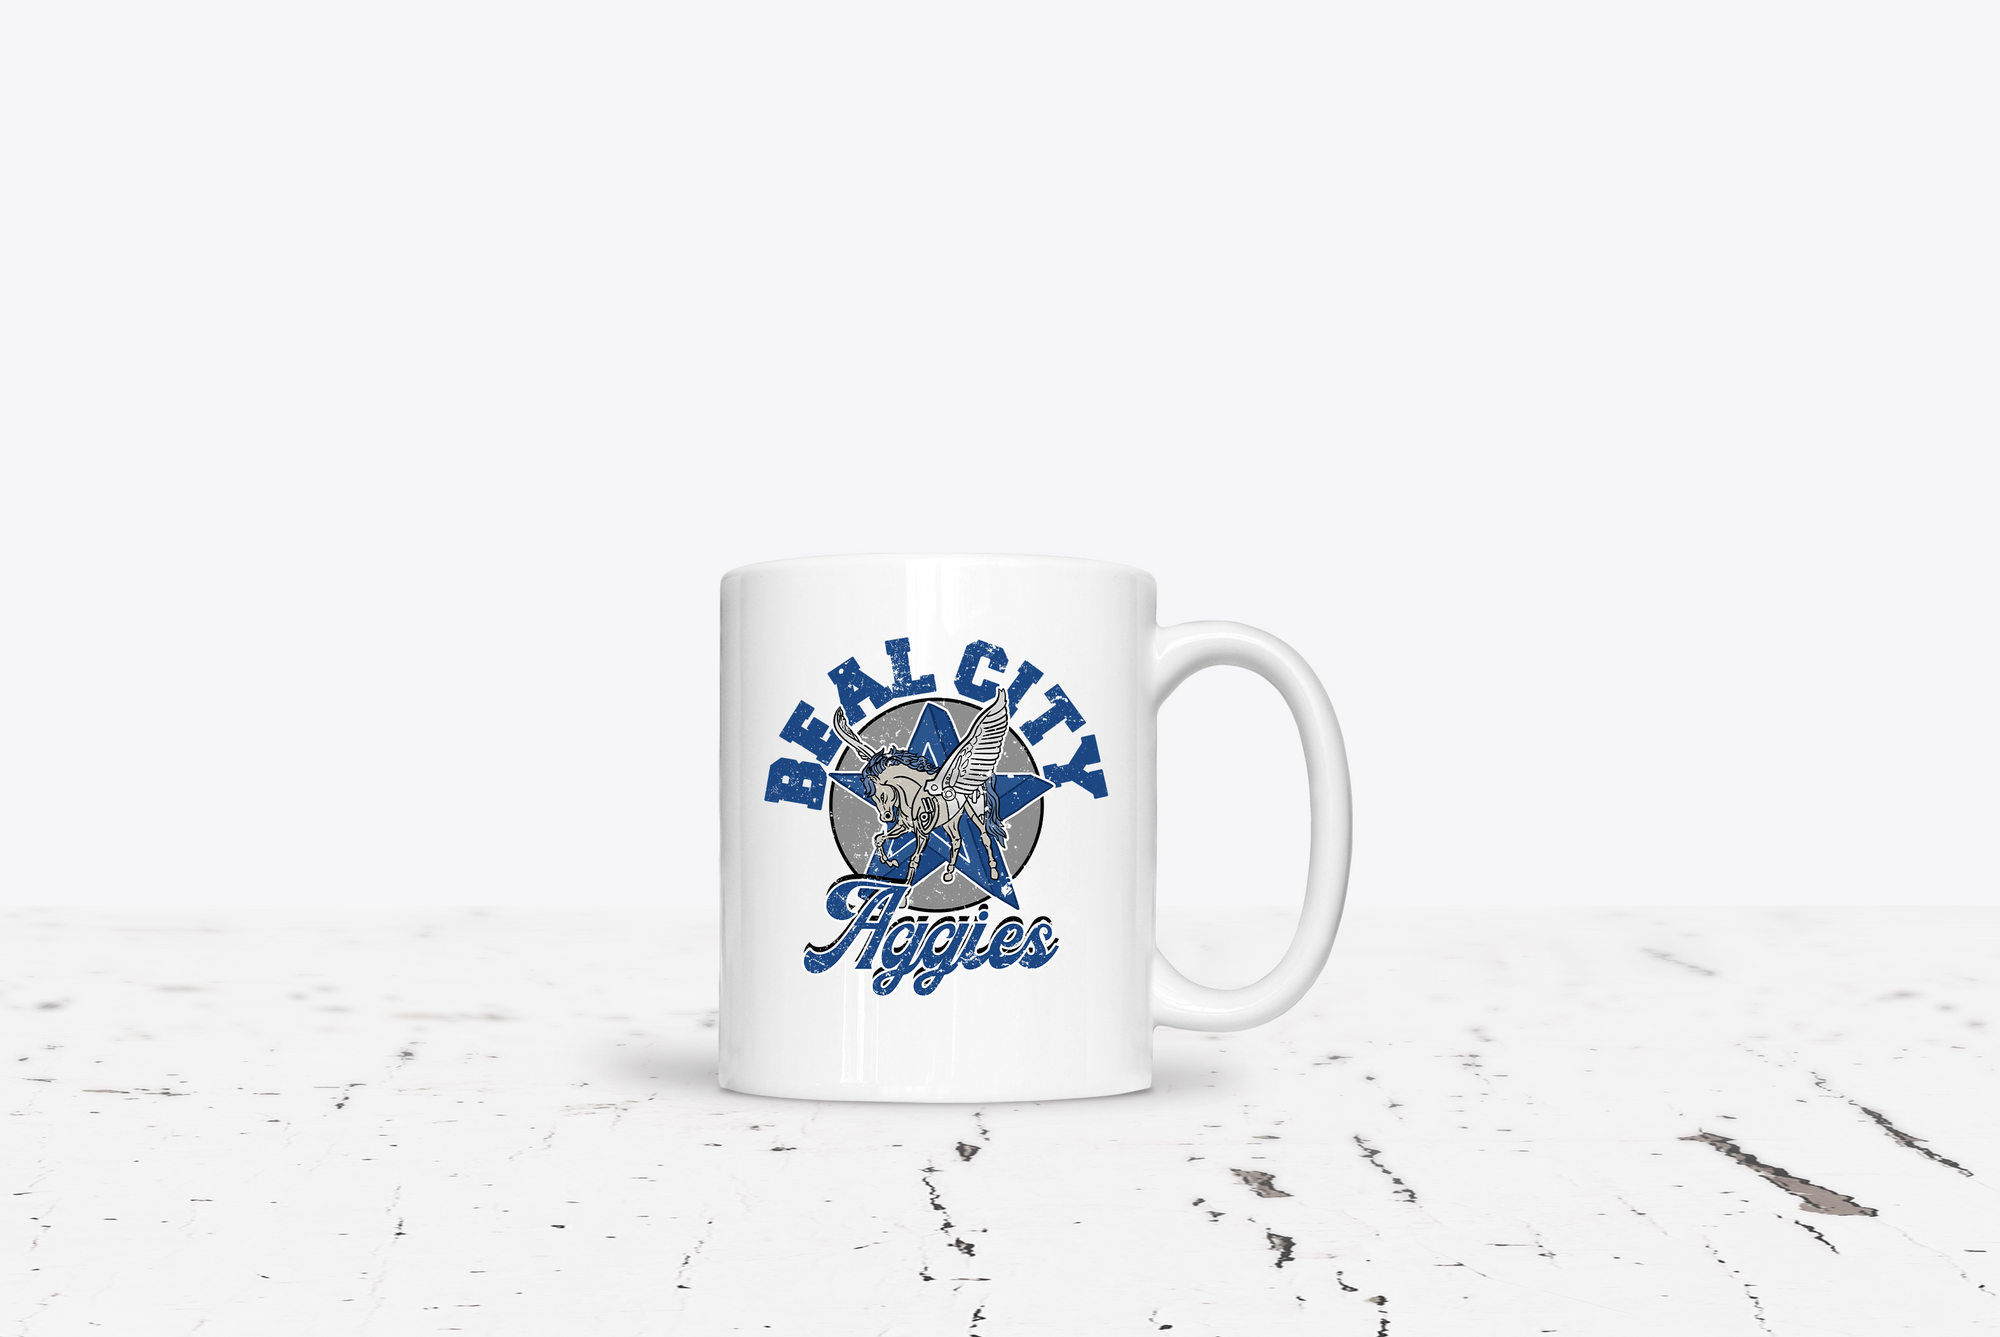 Beal City 15 oz Coffee Mug